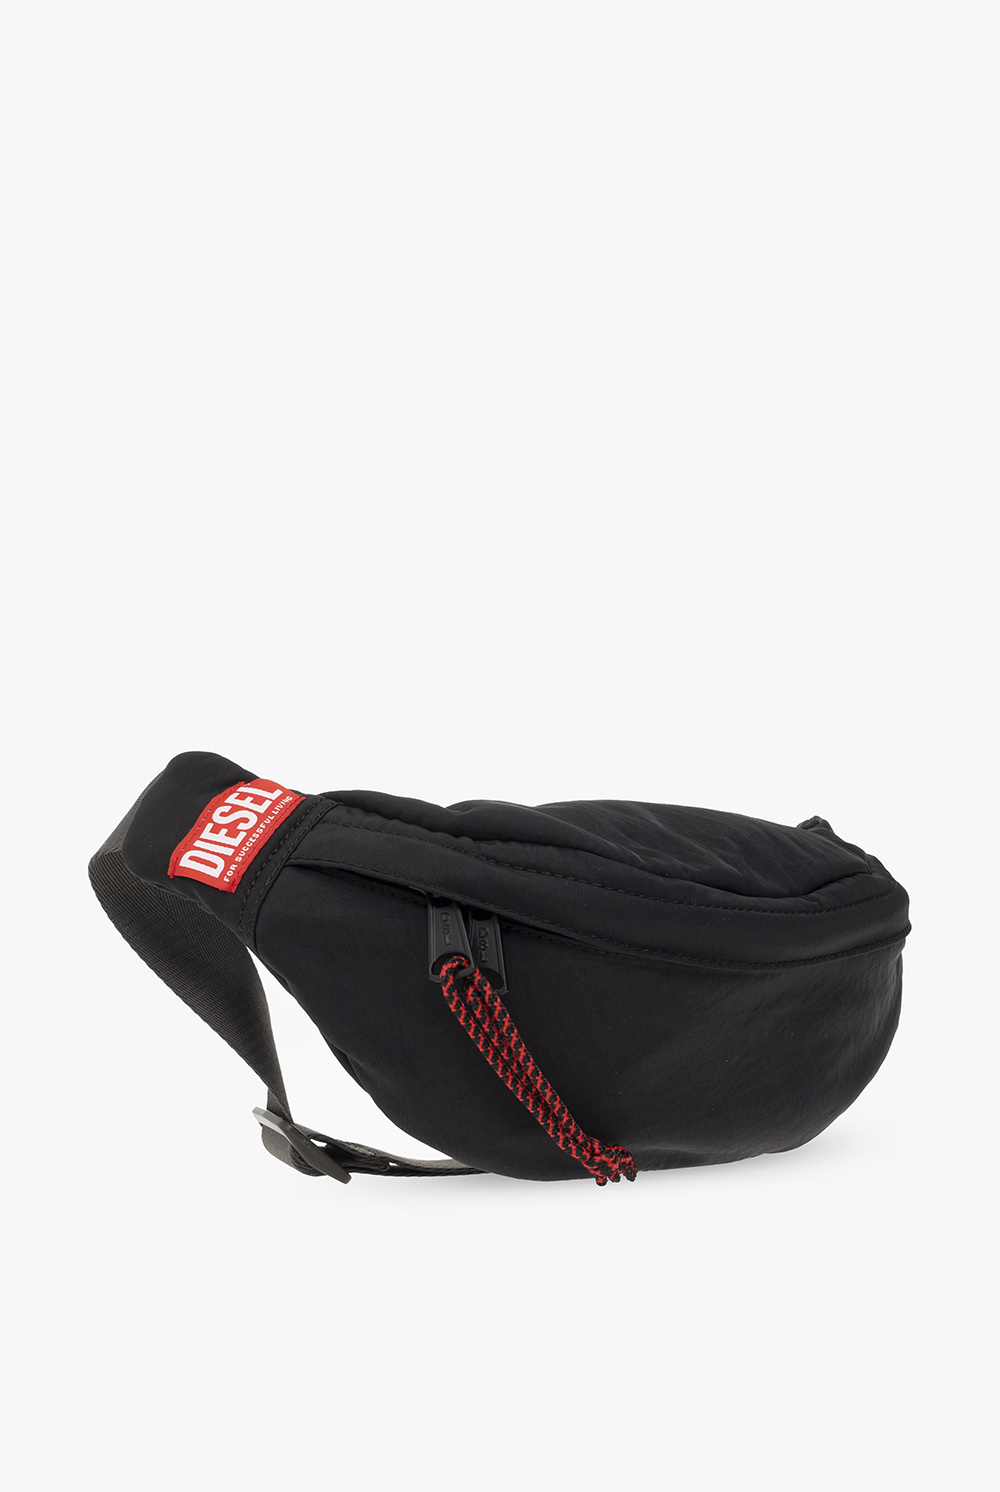 Diesel ‘RAVE’ belt bag